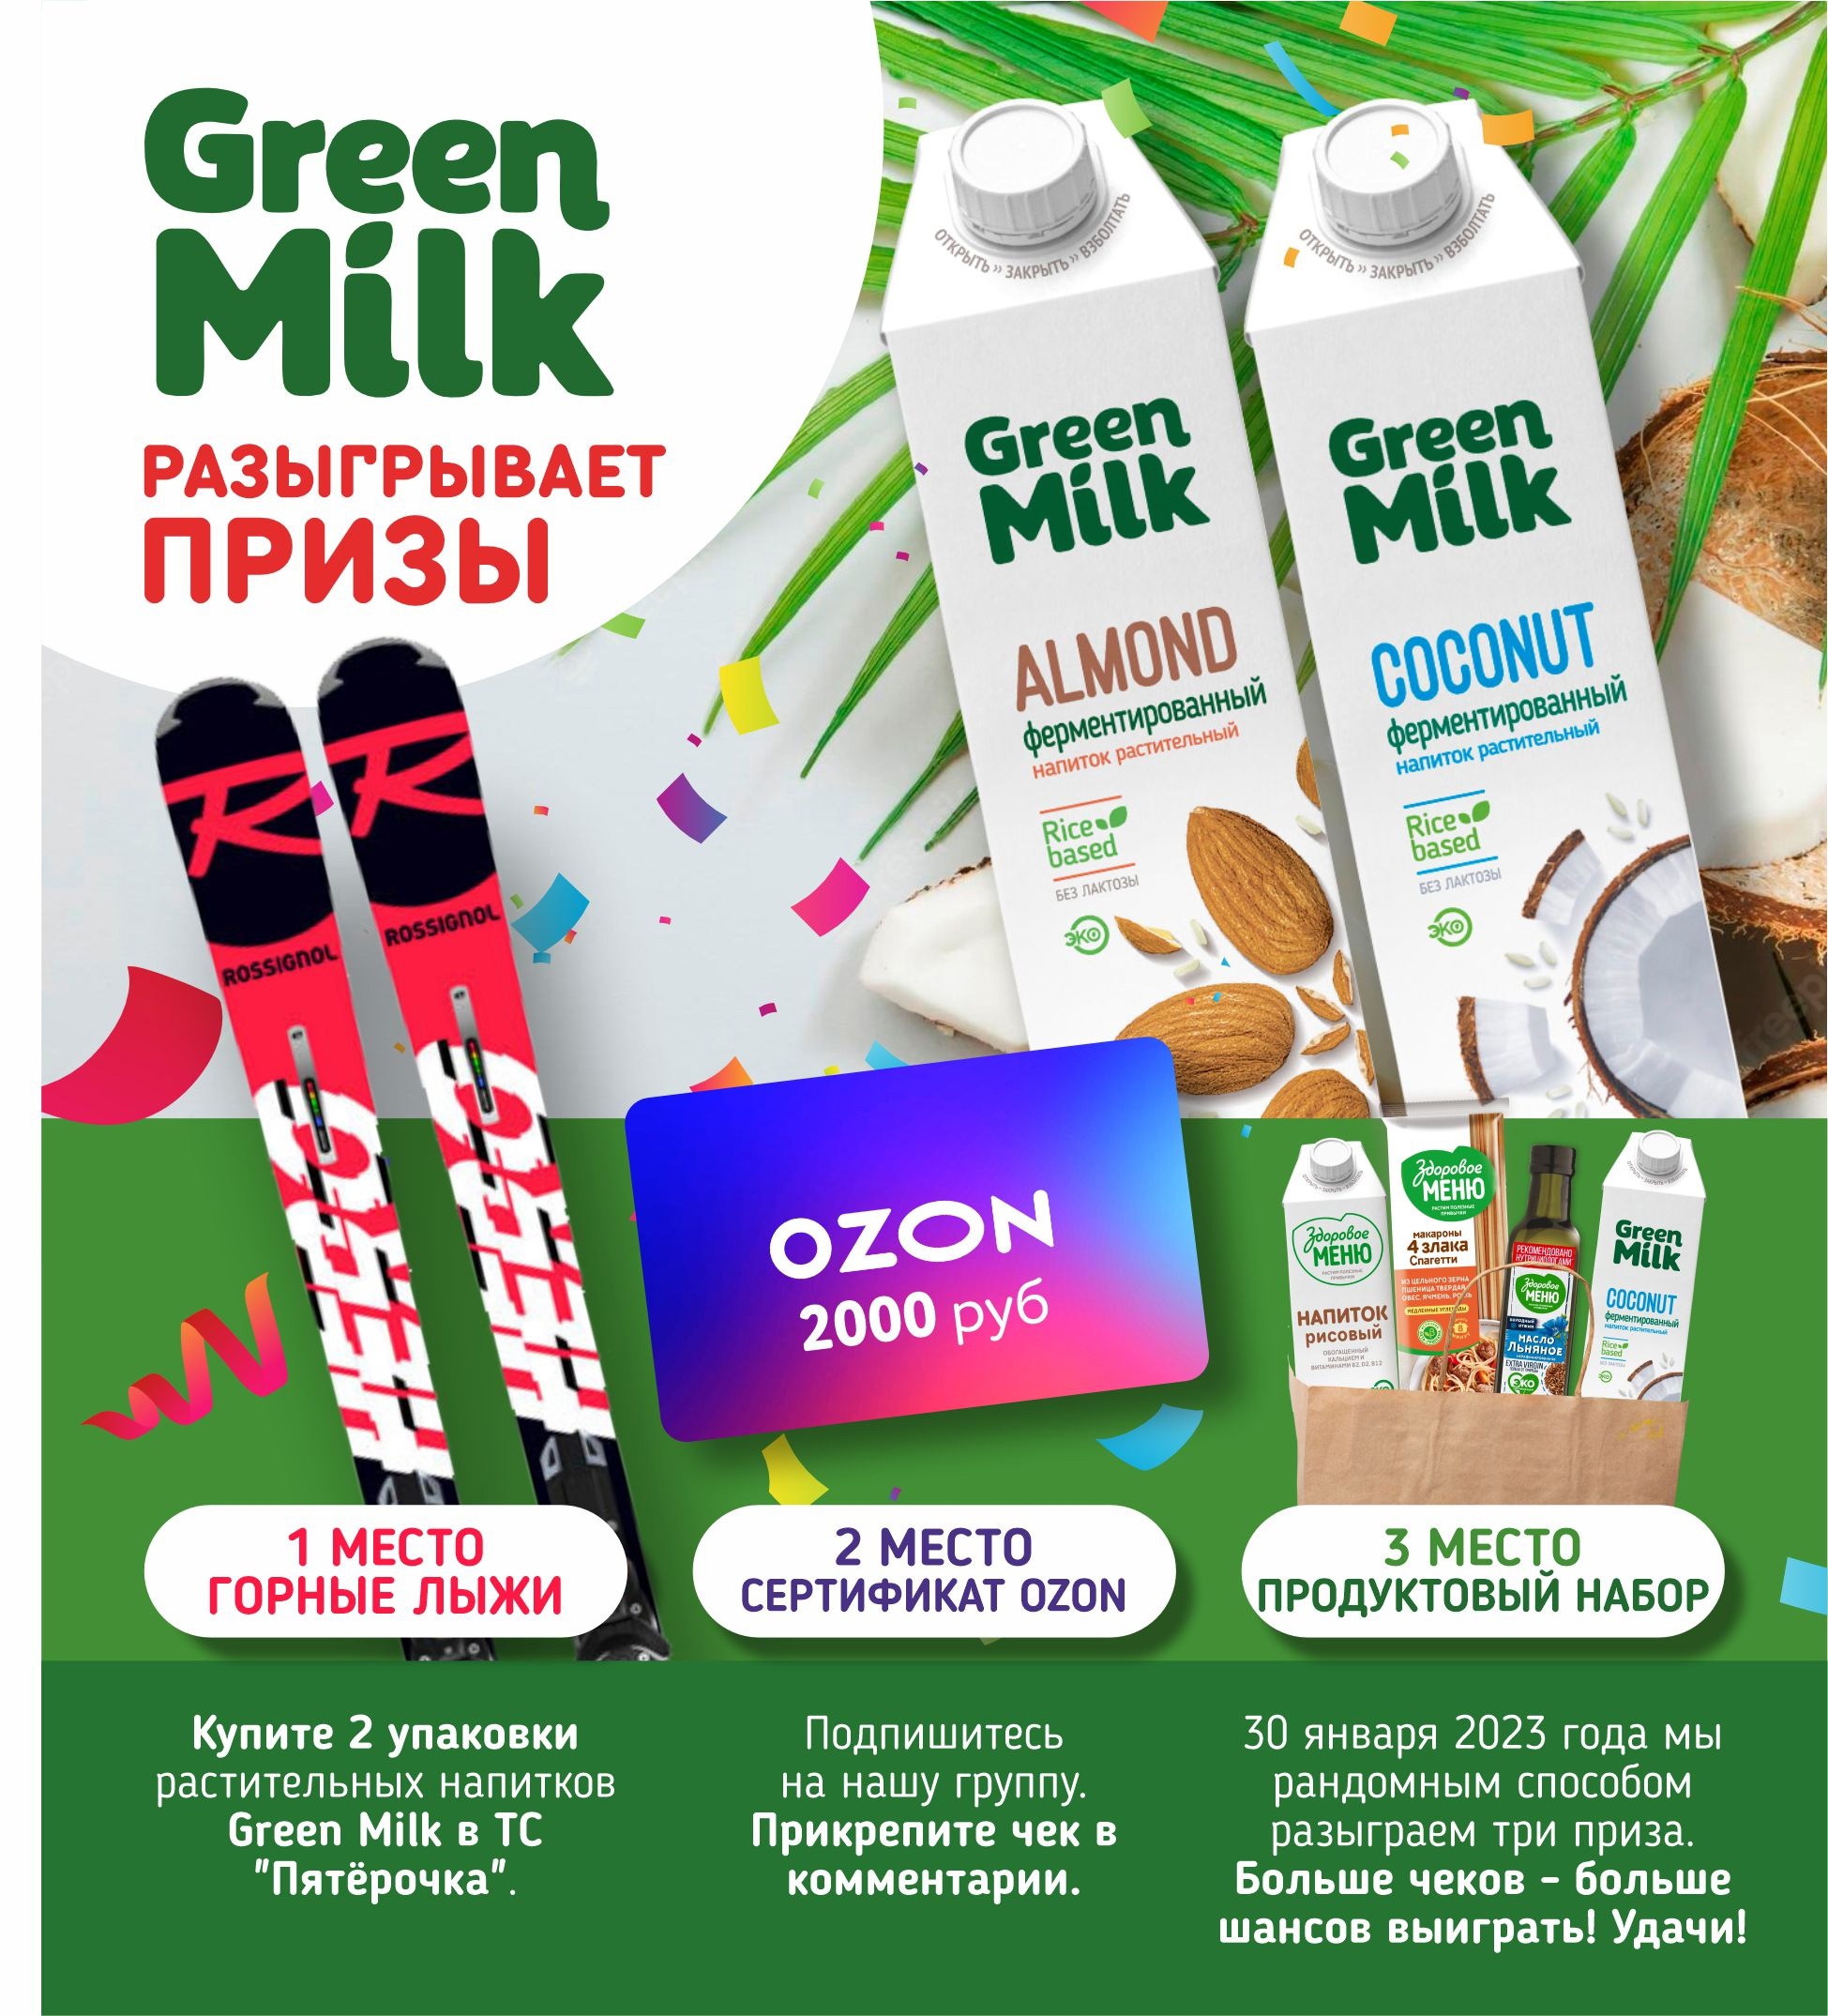 Промо-акция Green Milk и Пятерочка: «Green Milk разыгрывает призы»